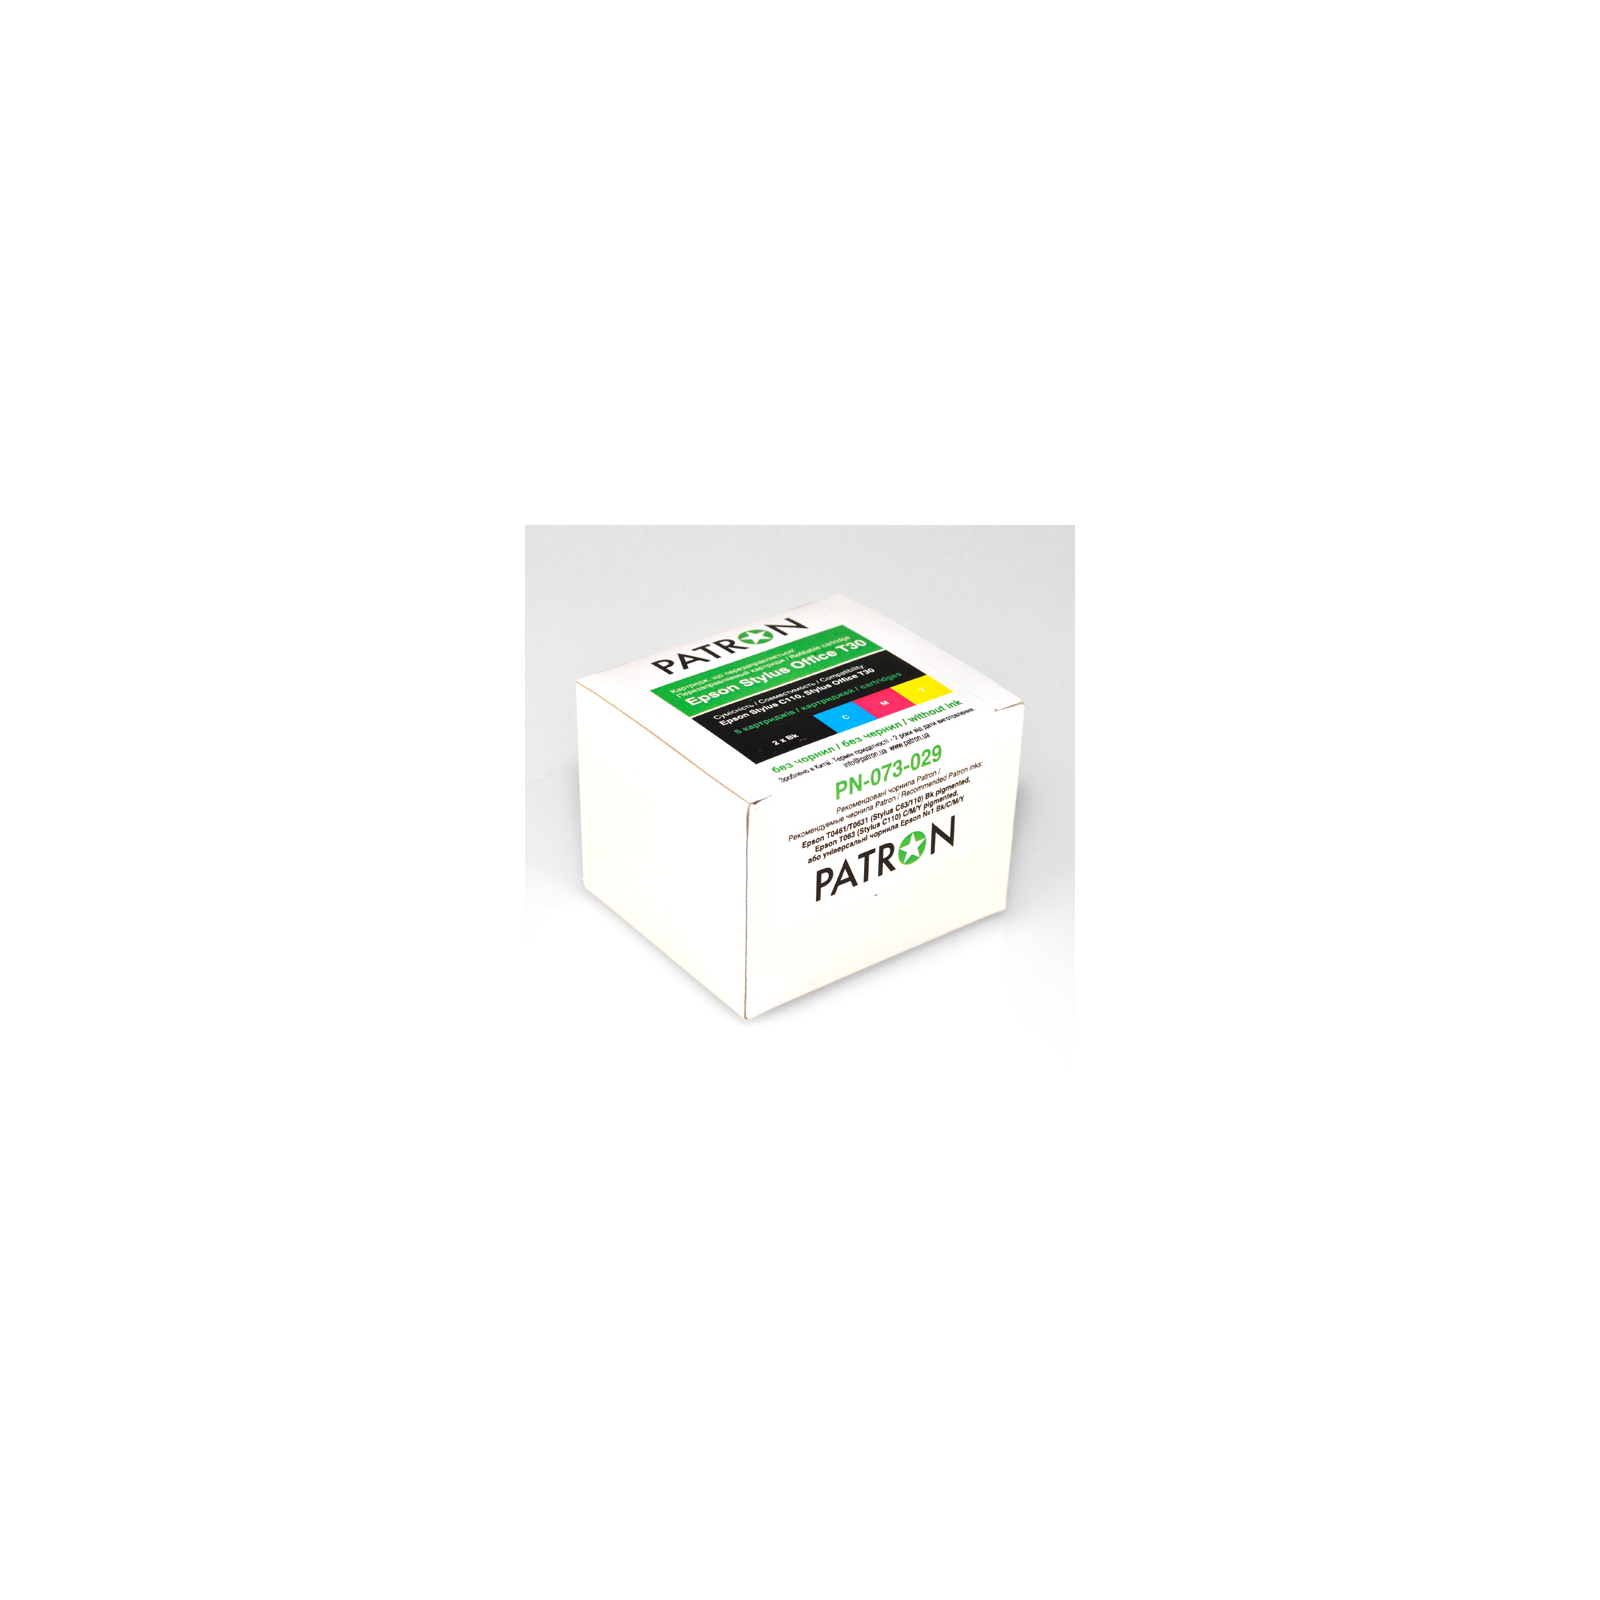 Комплект перезаправляемых картриджей Patron EPSON Stylus Office T30, 5шт (PN-073-029)